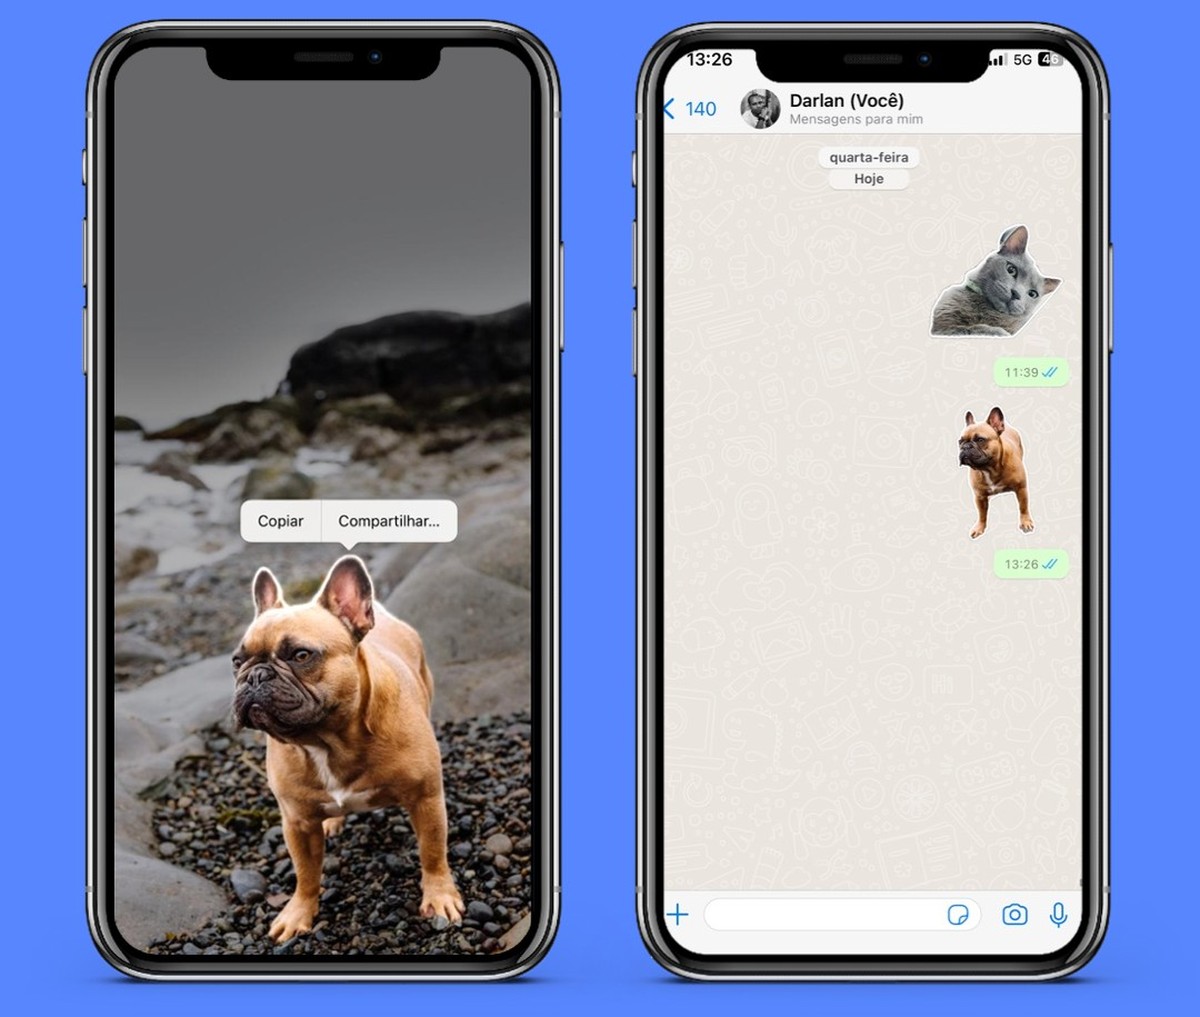 5 Apps de Figurinhas para WhatsApp no iOS em 2021